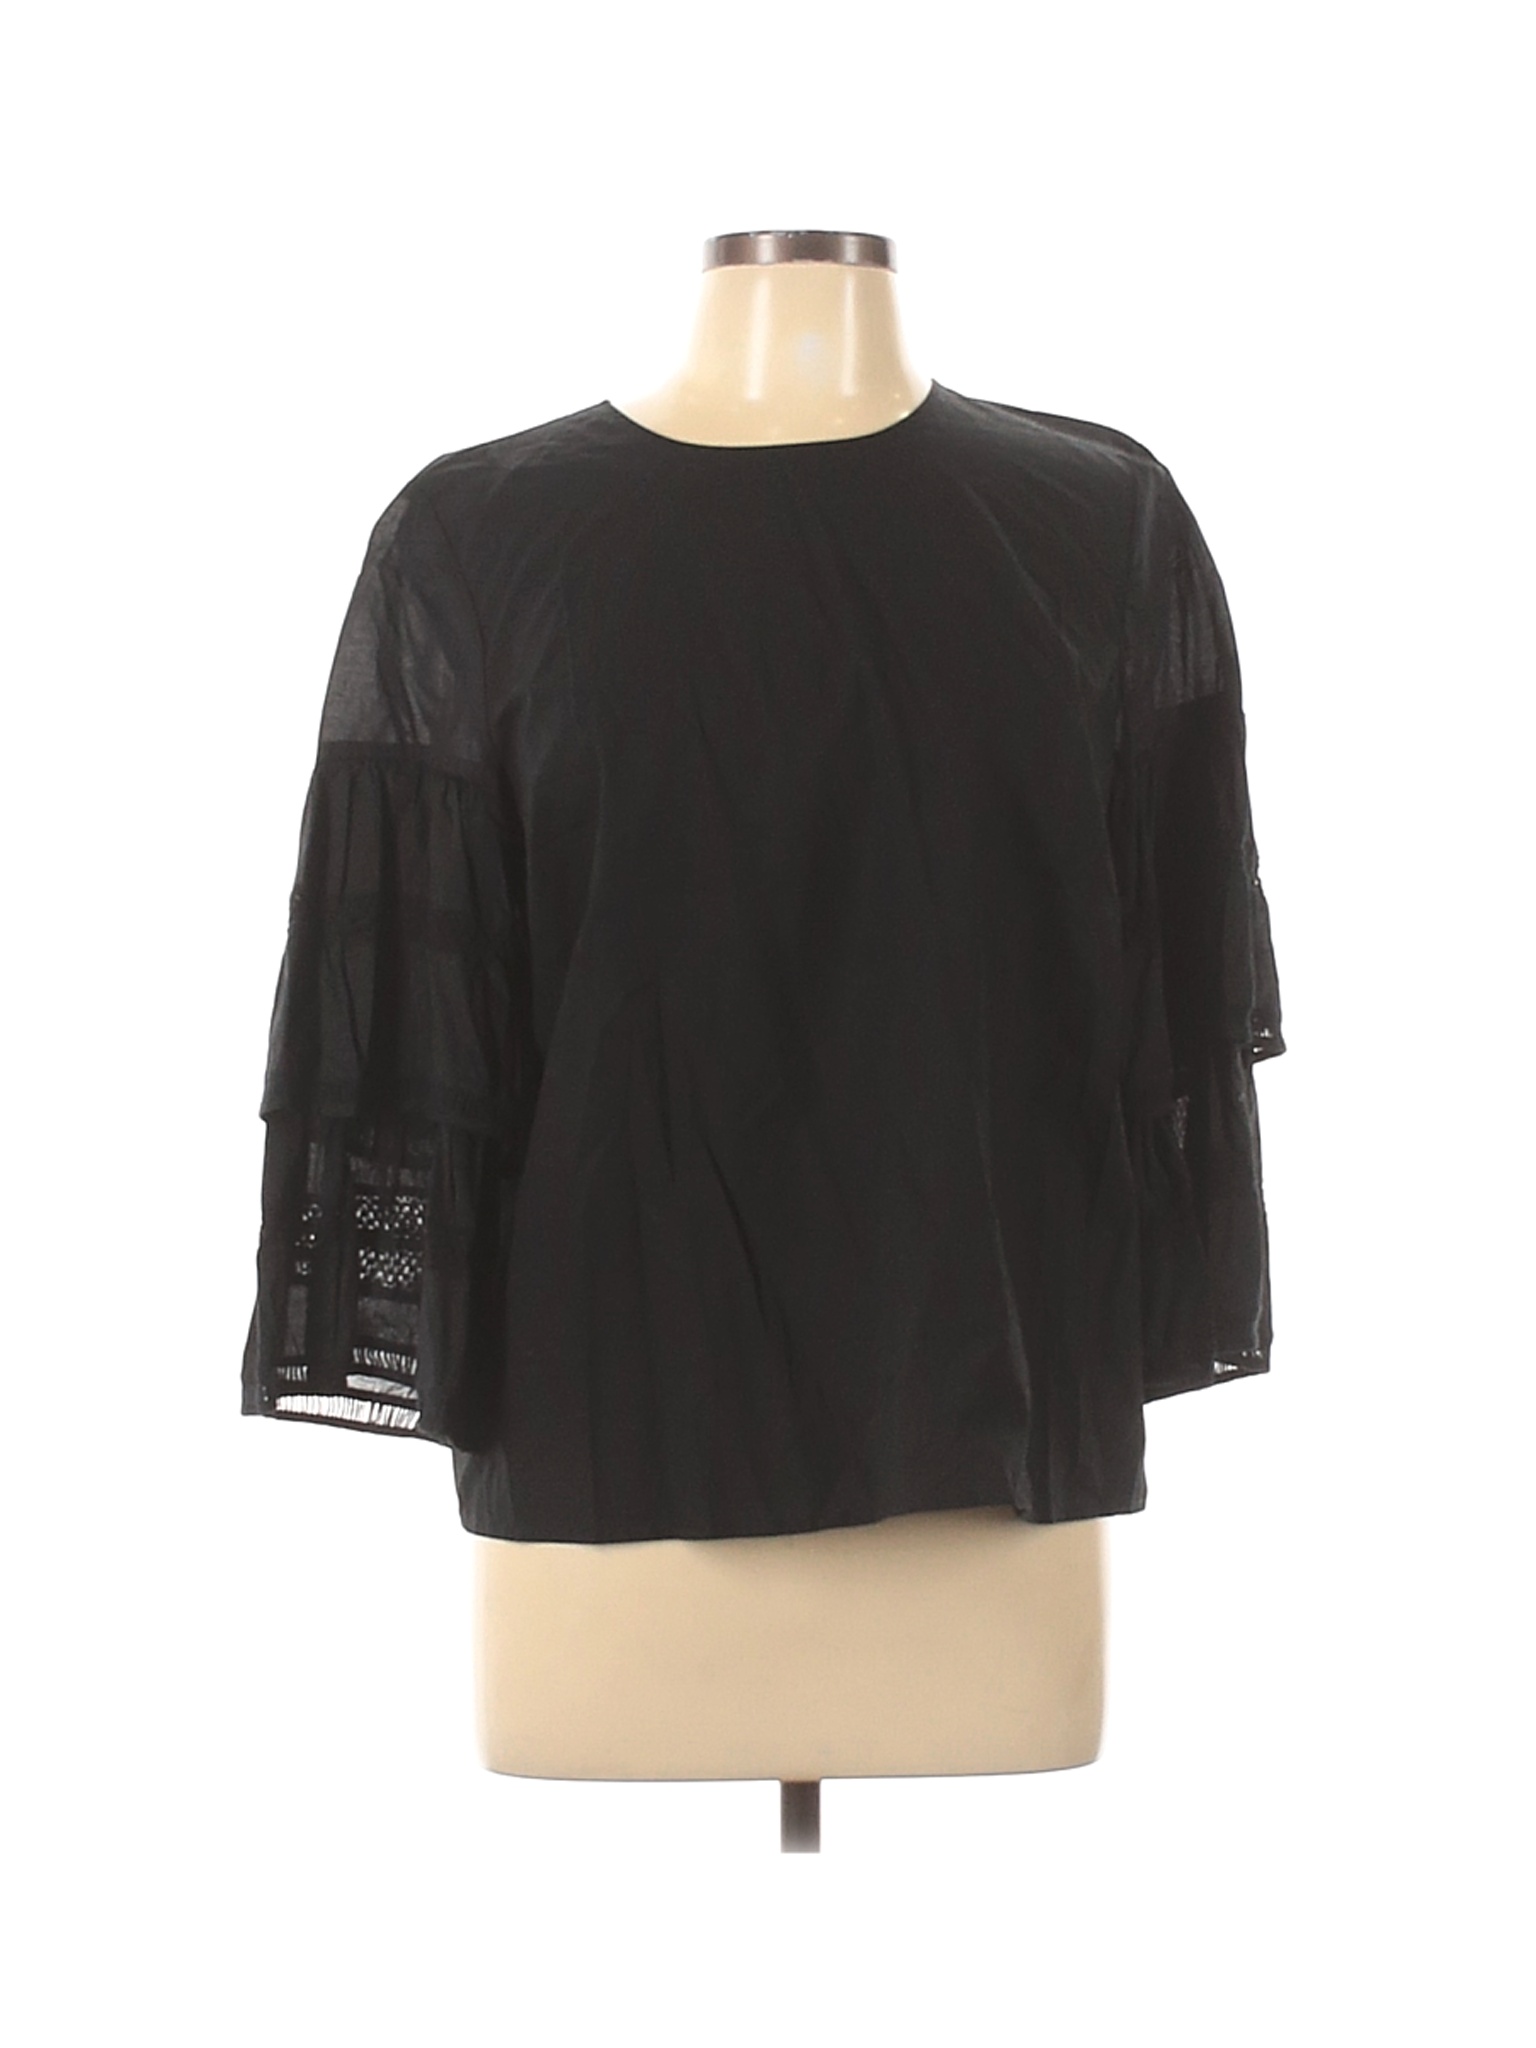 Who What Wear Women Black Long Sleeve Blouse L | eBay